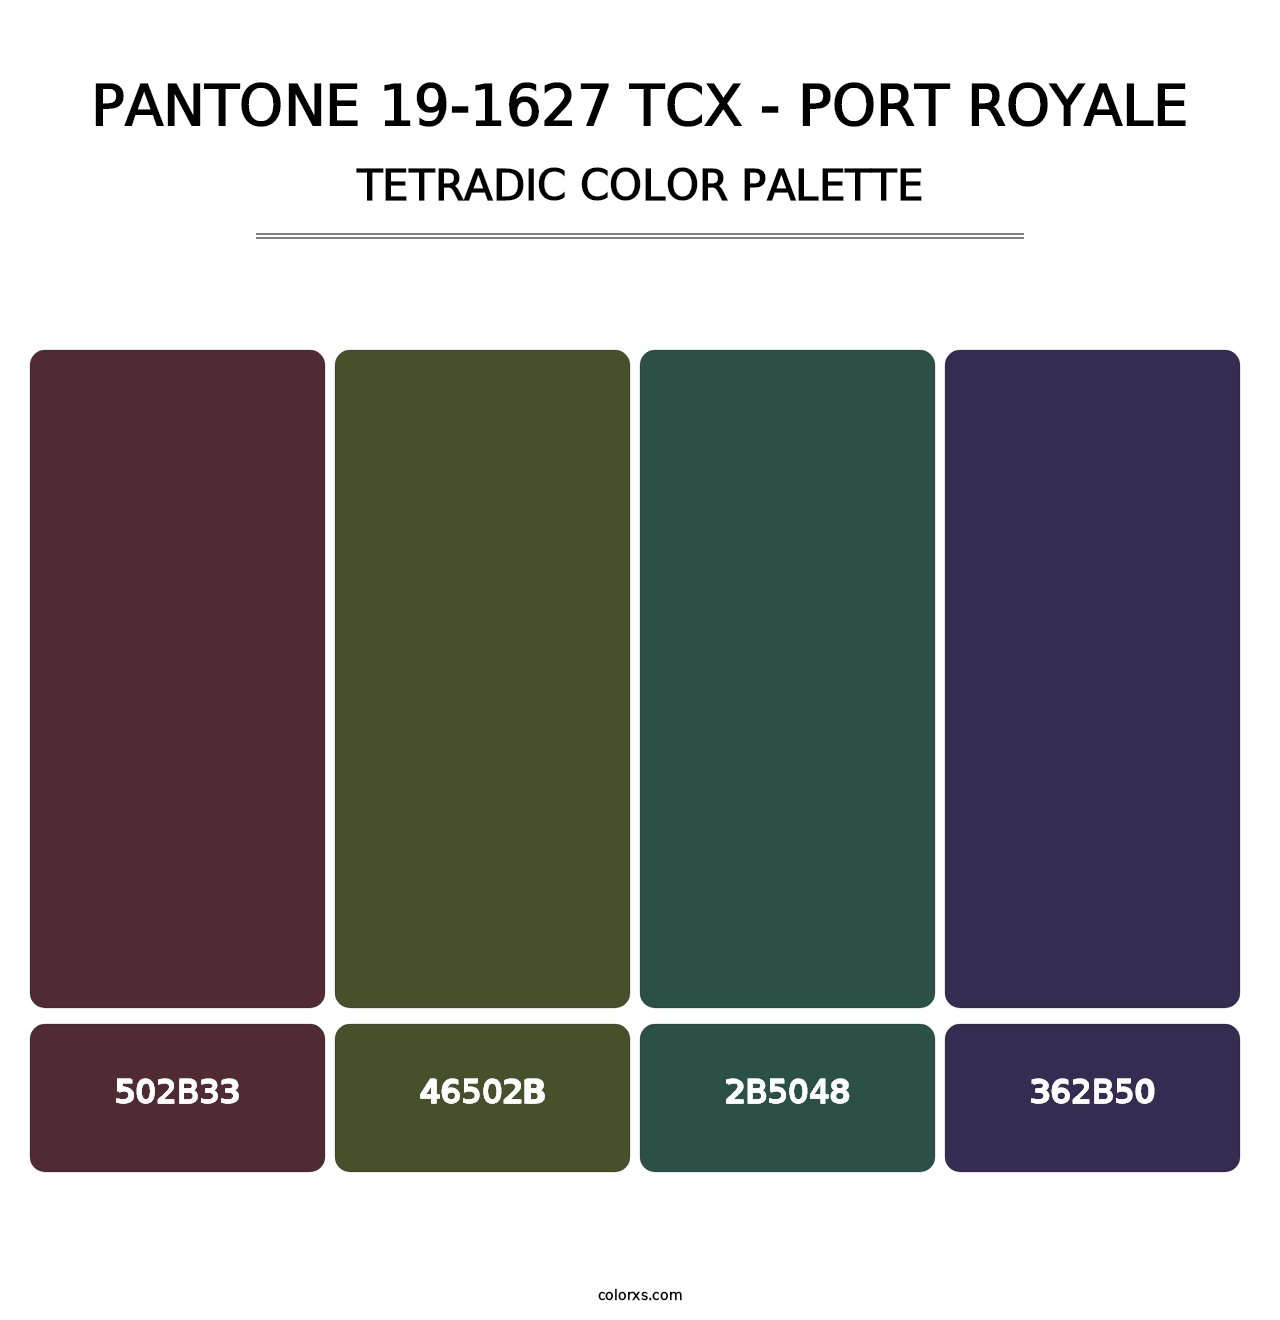 PANTONE 19-1627 TCX - Port Royale - Tetradic Color Palette